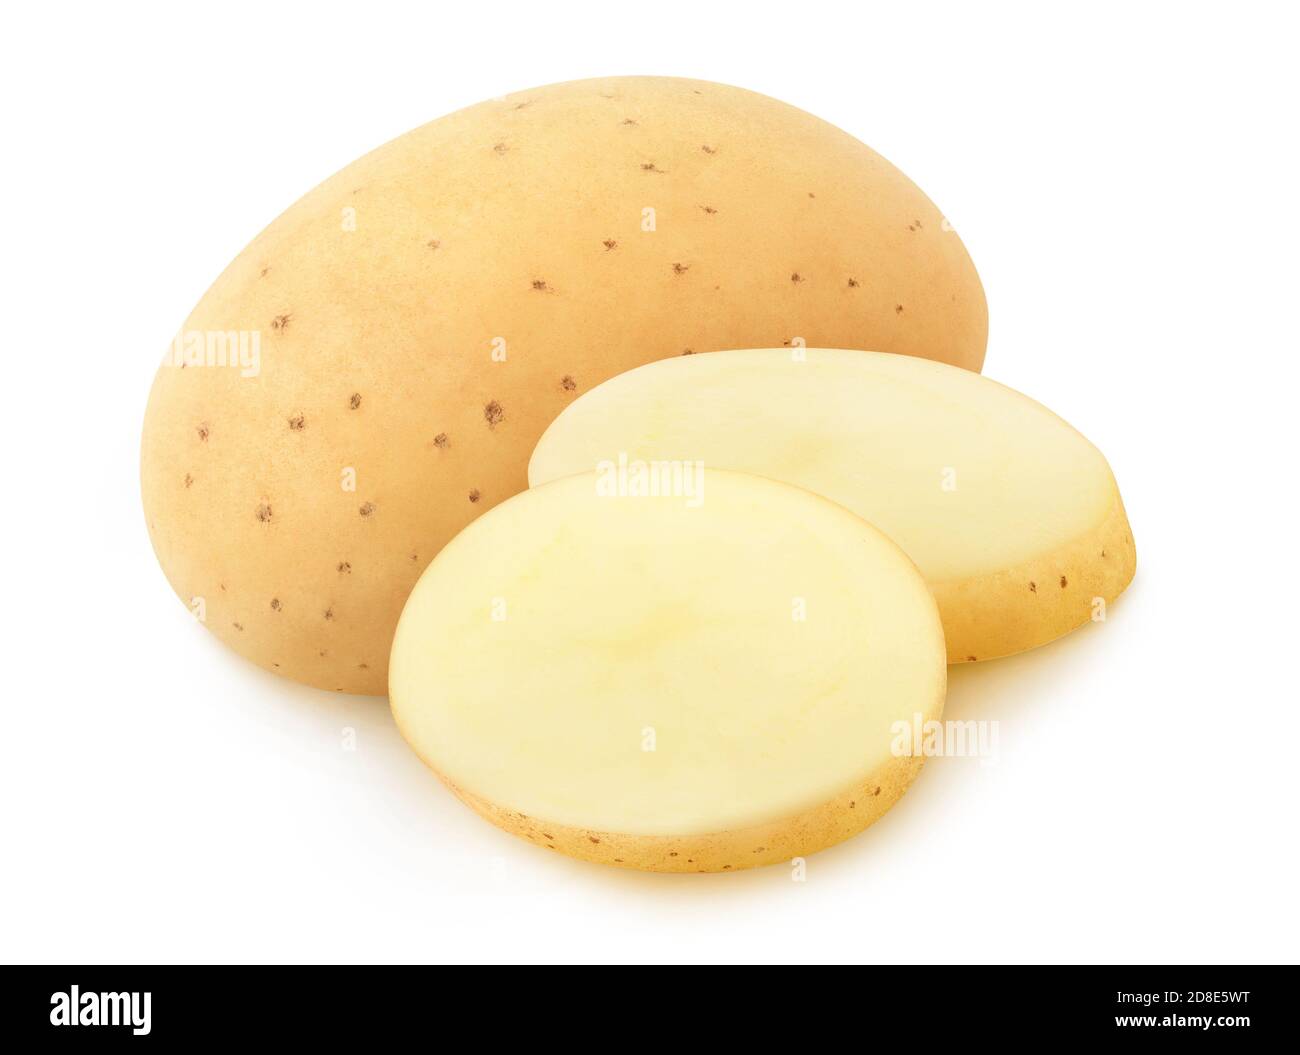 Isolierte Kartoffel. Ganze rohe gewaschene Kartoffel und zwei Scheiben isoliert auf weißem Hintergrund Stockfoto